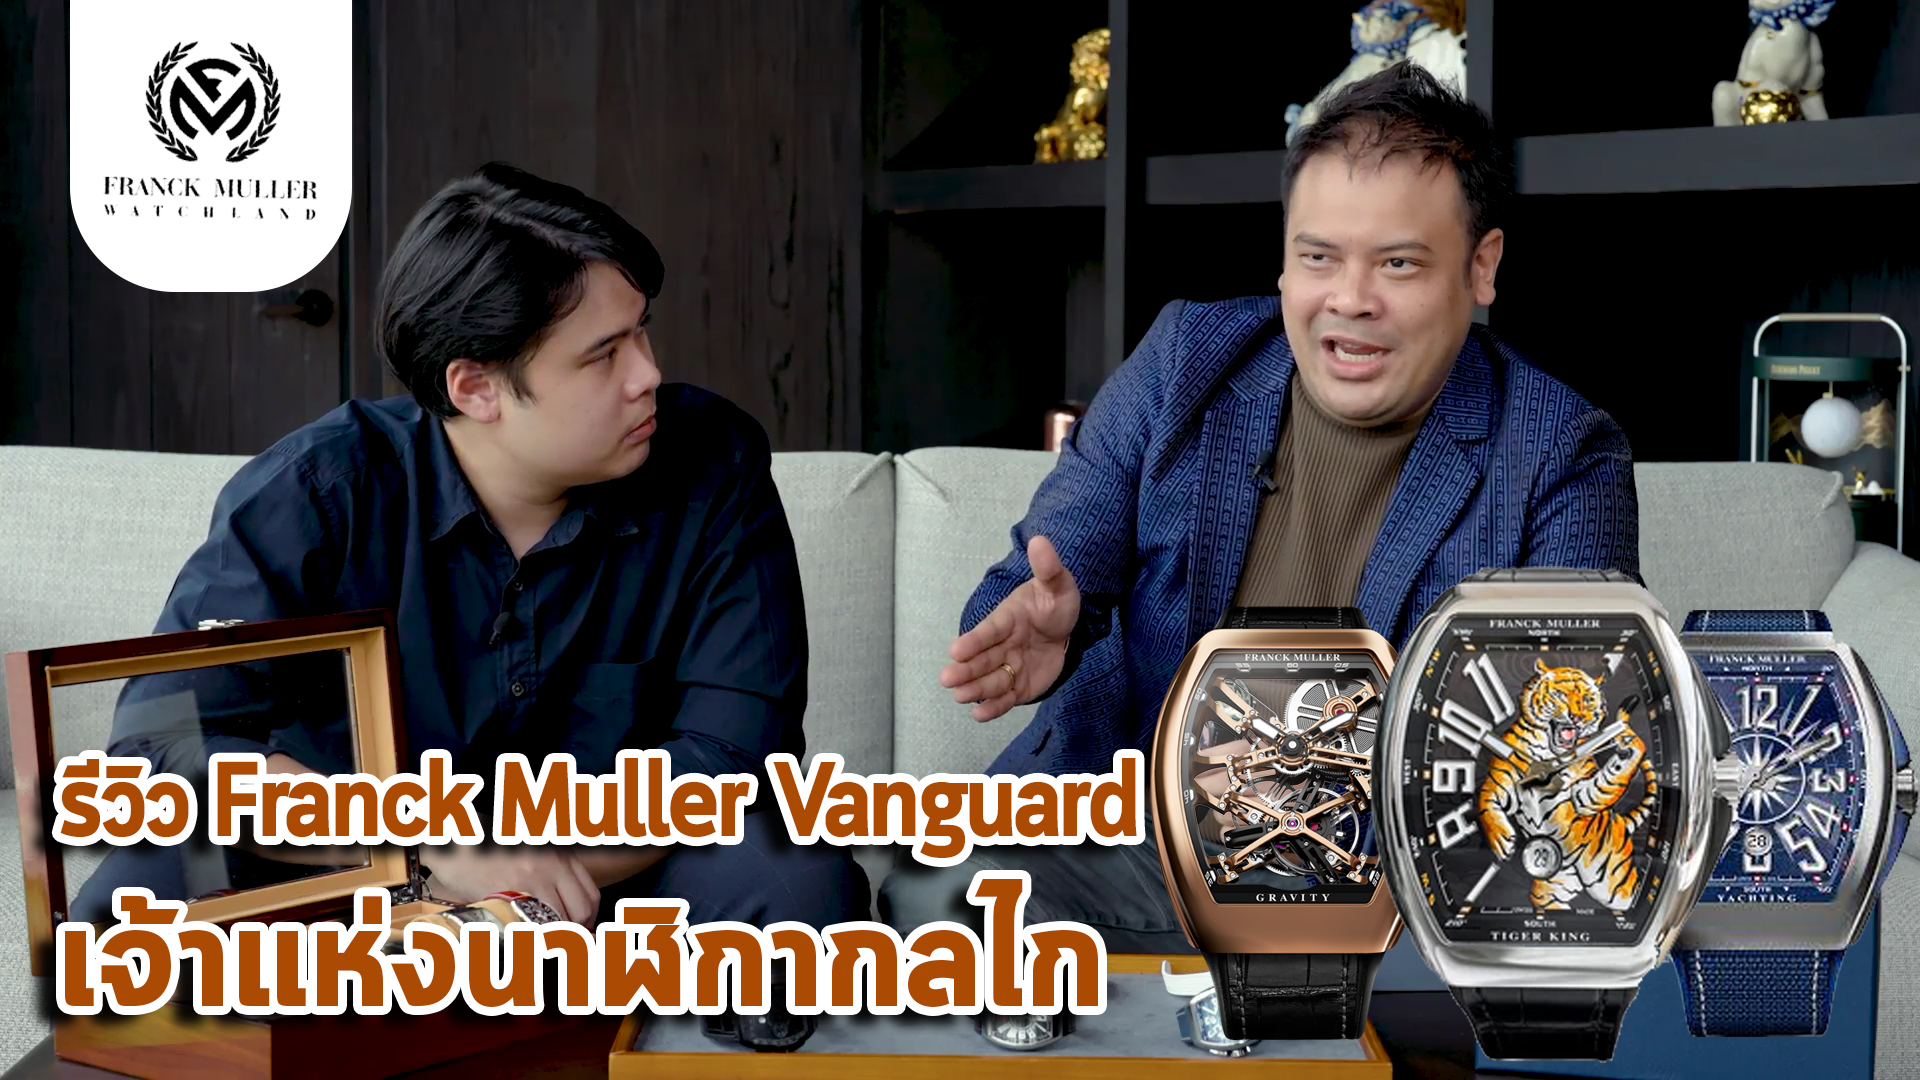 รีวิว Franck Muller Vanguard เจ้าแห่งนาฬิกากลไก | SIAM WATCH CLUB ซื้อขายนาฬิกามือสองของแท้